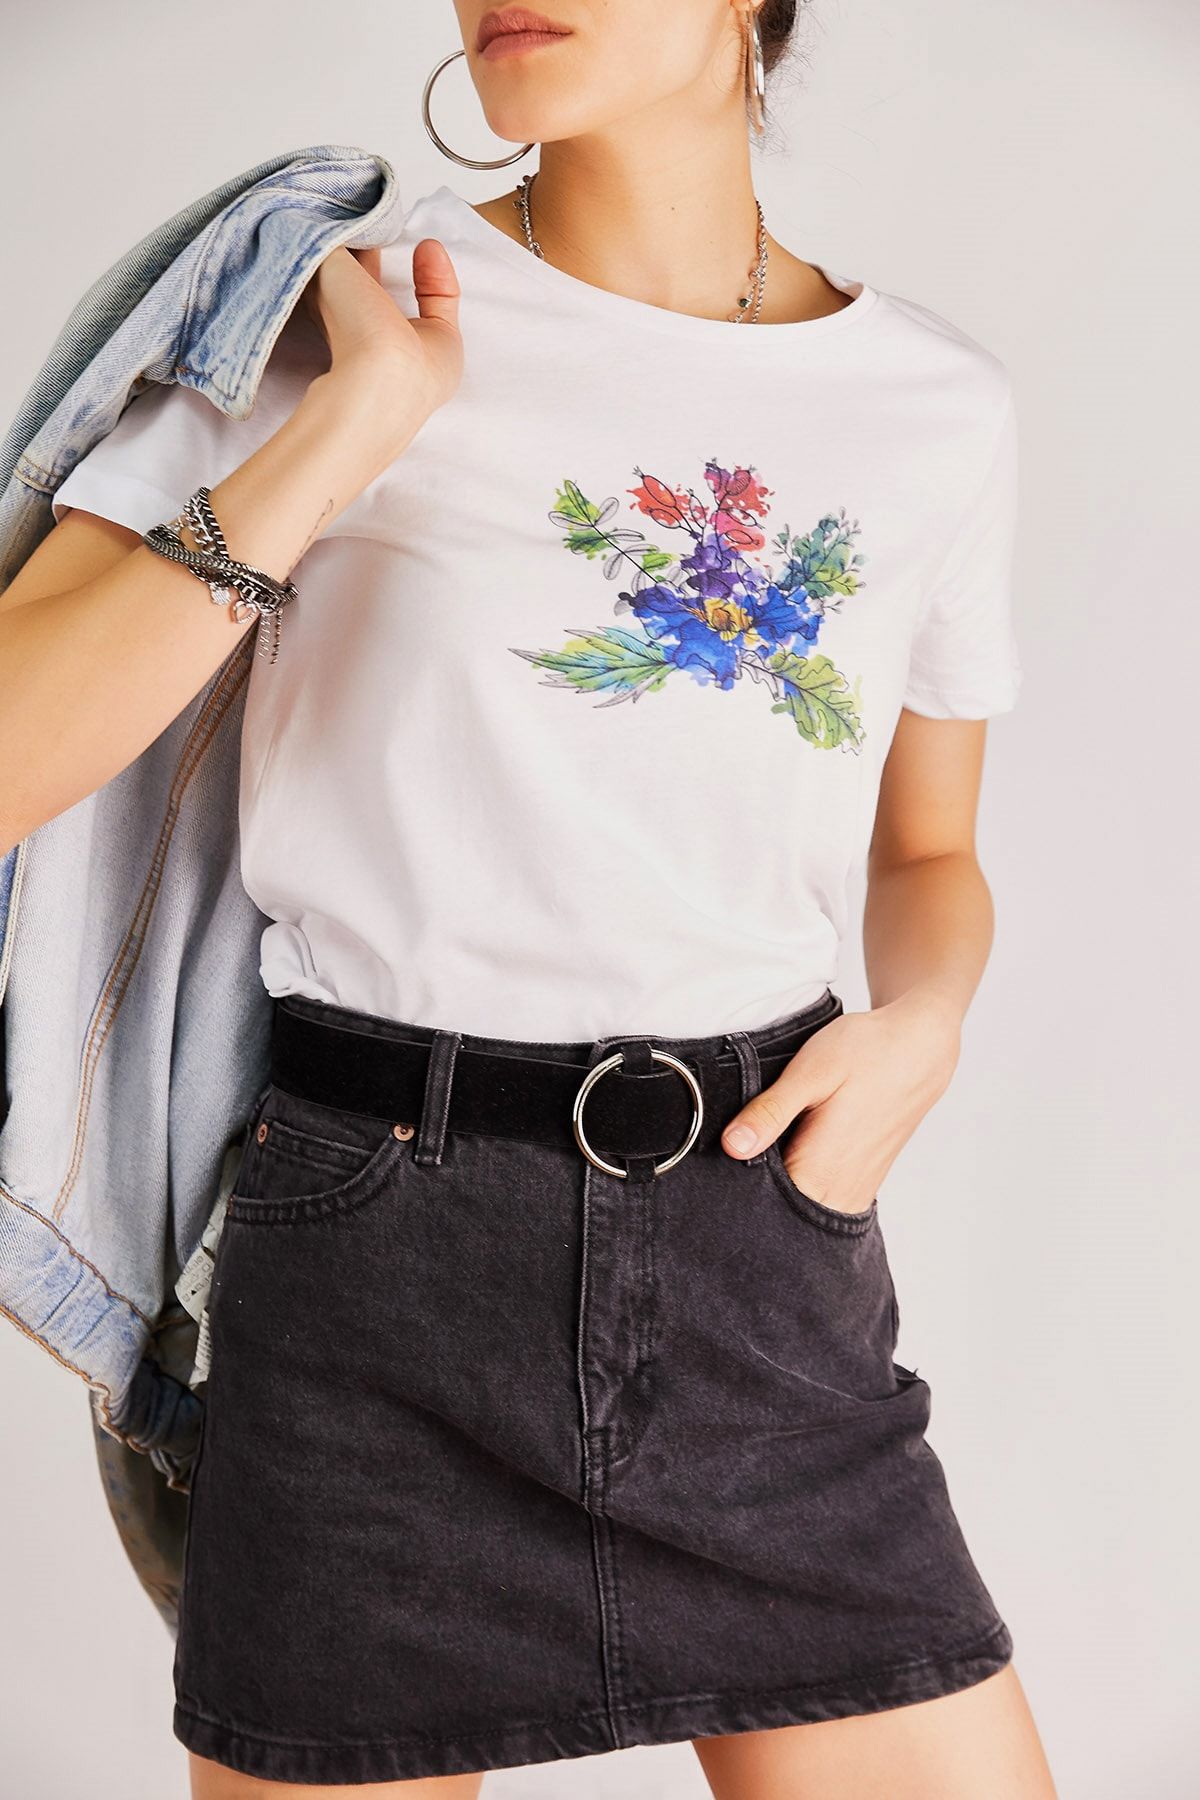 Boutiquen Kadın Beyaz Önü Renkli Çiçek Baskılı T-Shirt 1PSDN-15